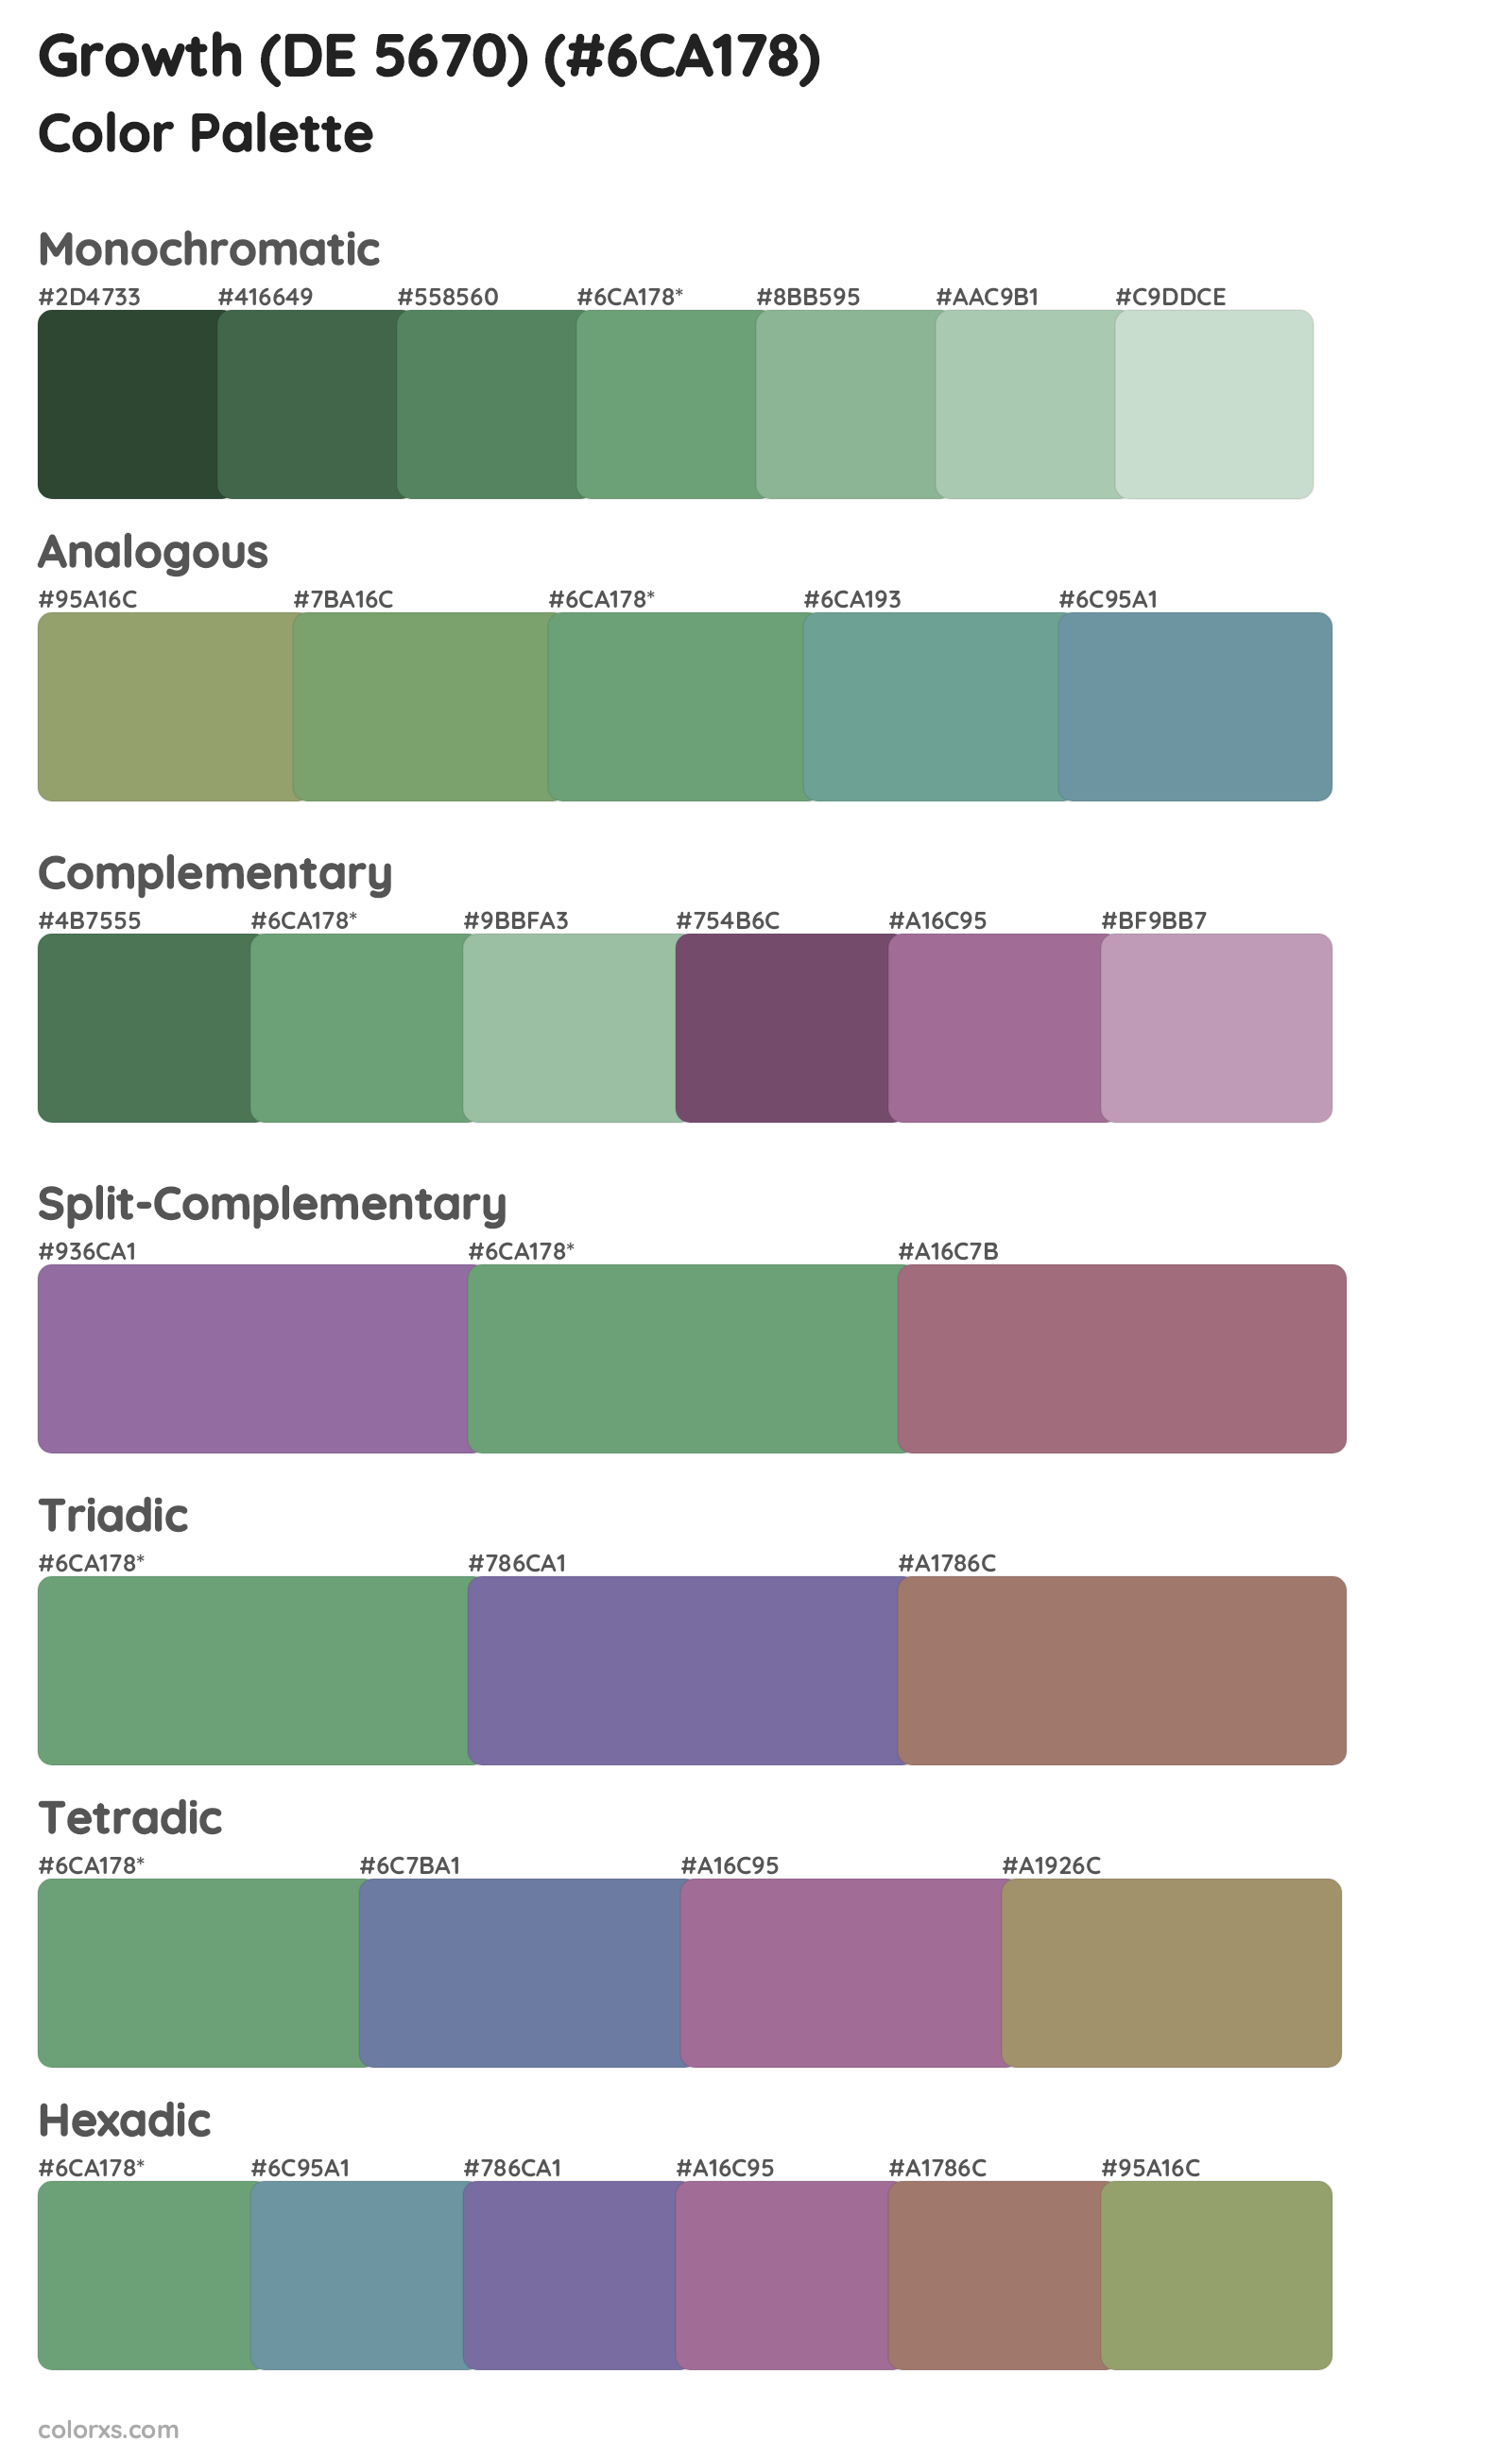 Growth (DE 5670) Color Scheme Palettes